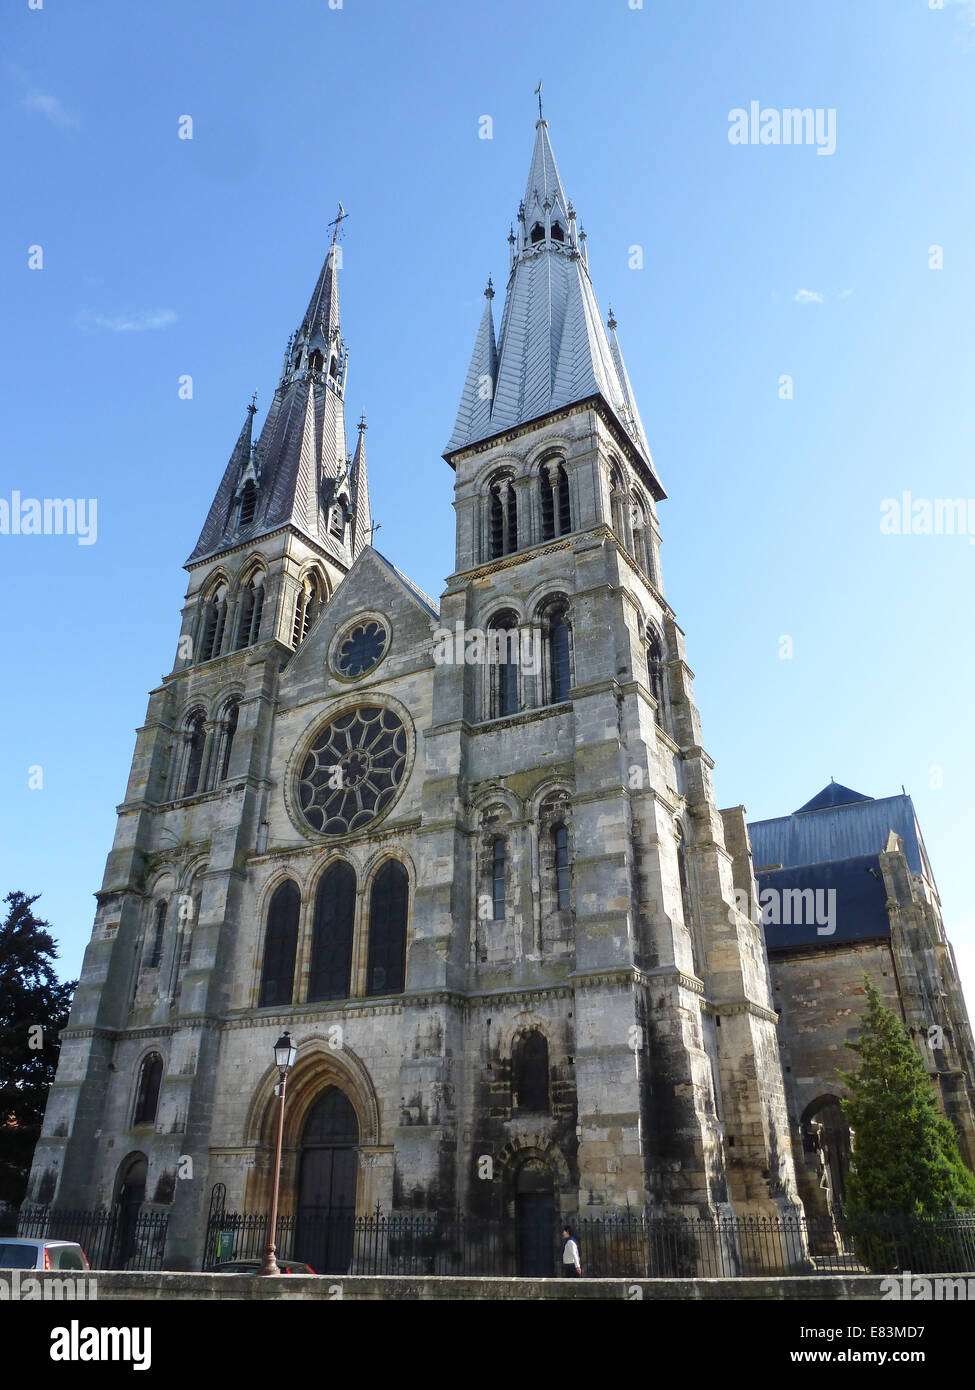 Cathédrale St Etienne à epine, france Banque D'Images